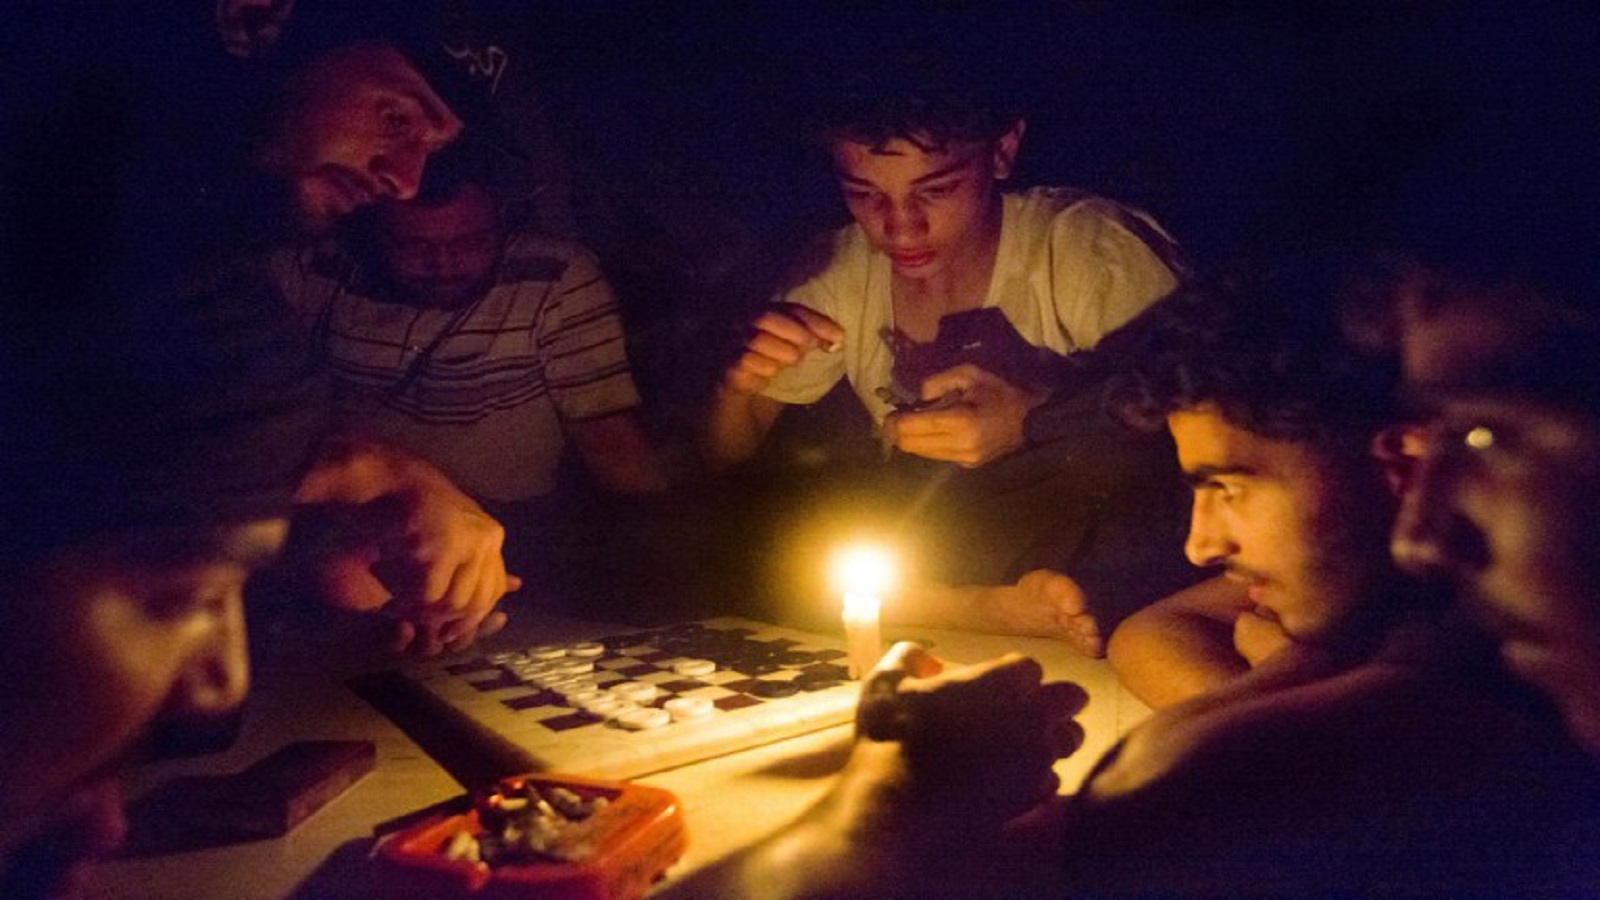 سوريا: مخزون "استراتيجي" للكهرباء.. والظلام